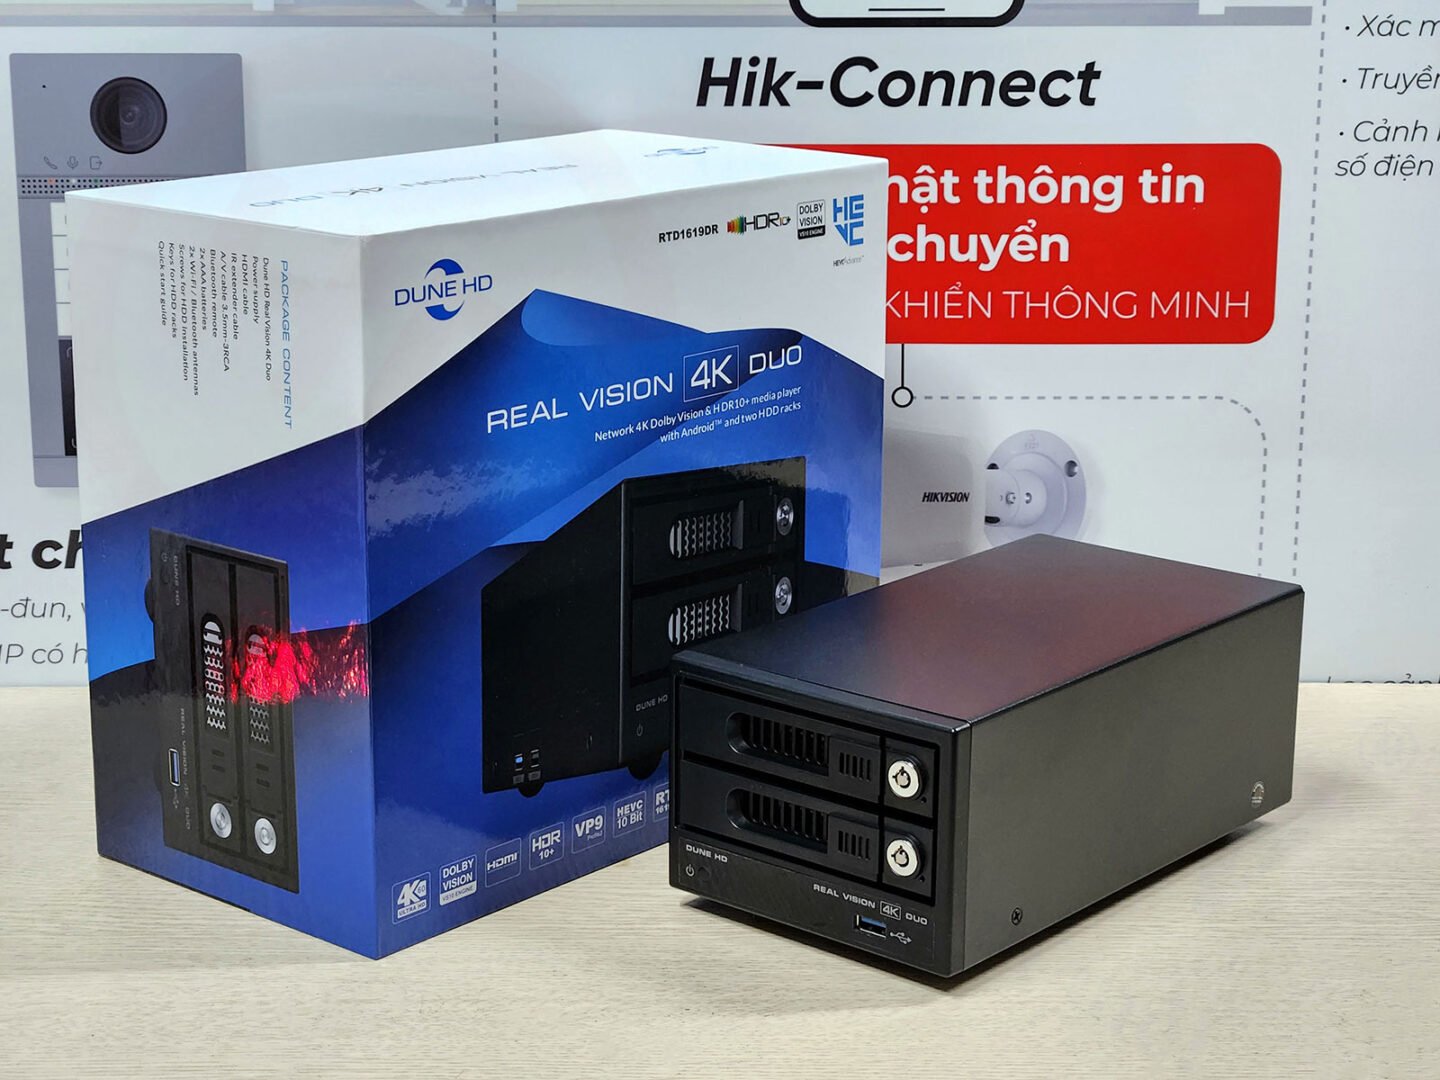 Đánh giá Đầu Dune HD Real Vision 4K Duo | Dune-HD Vietnam